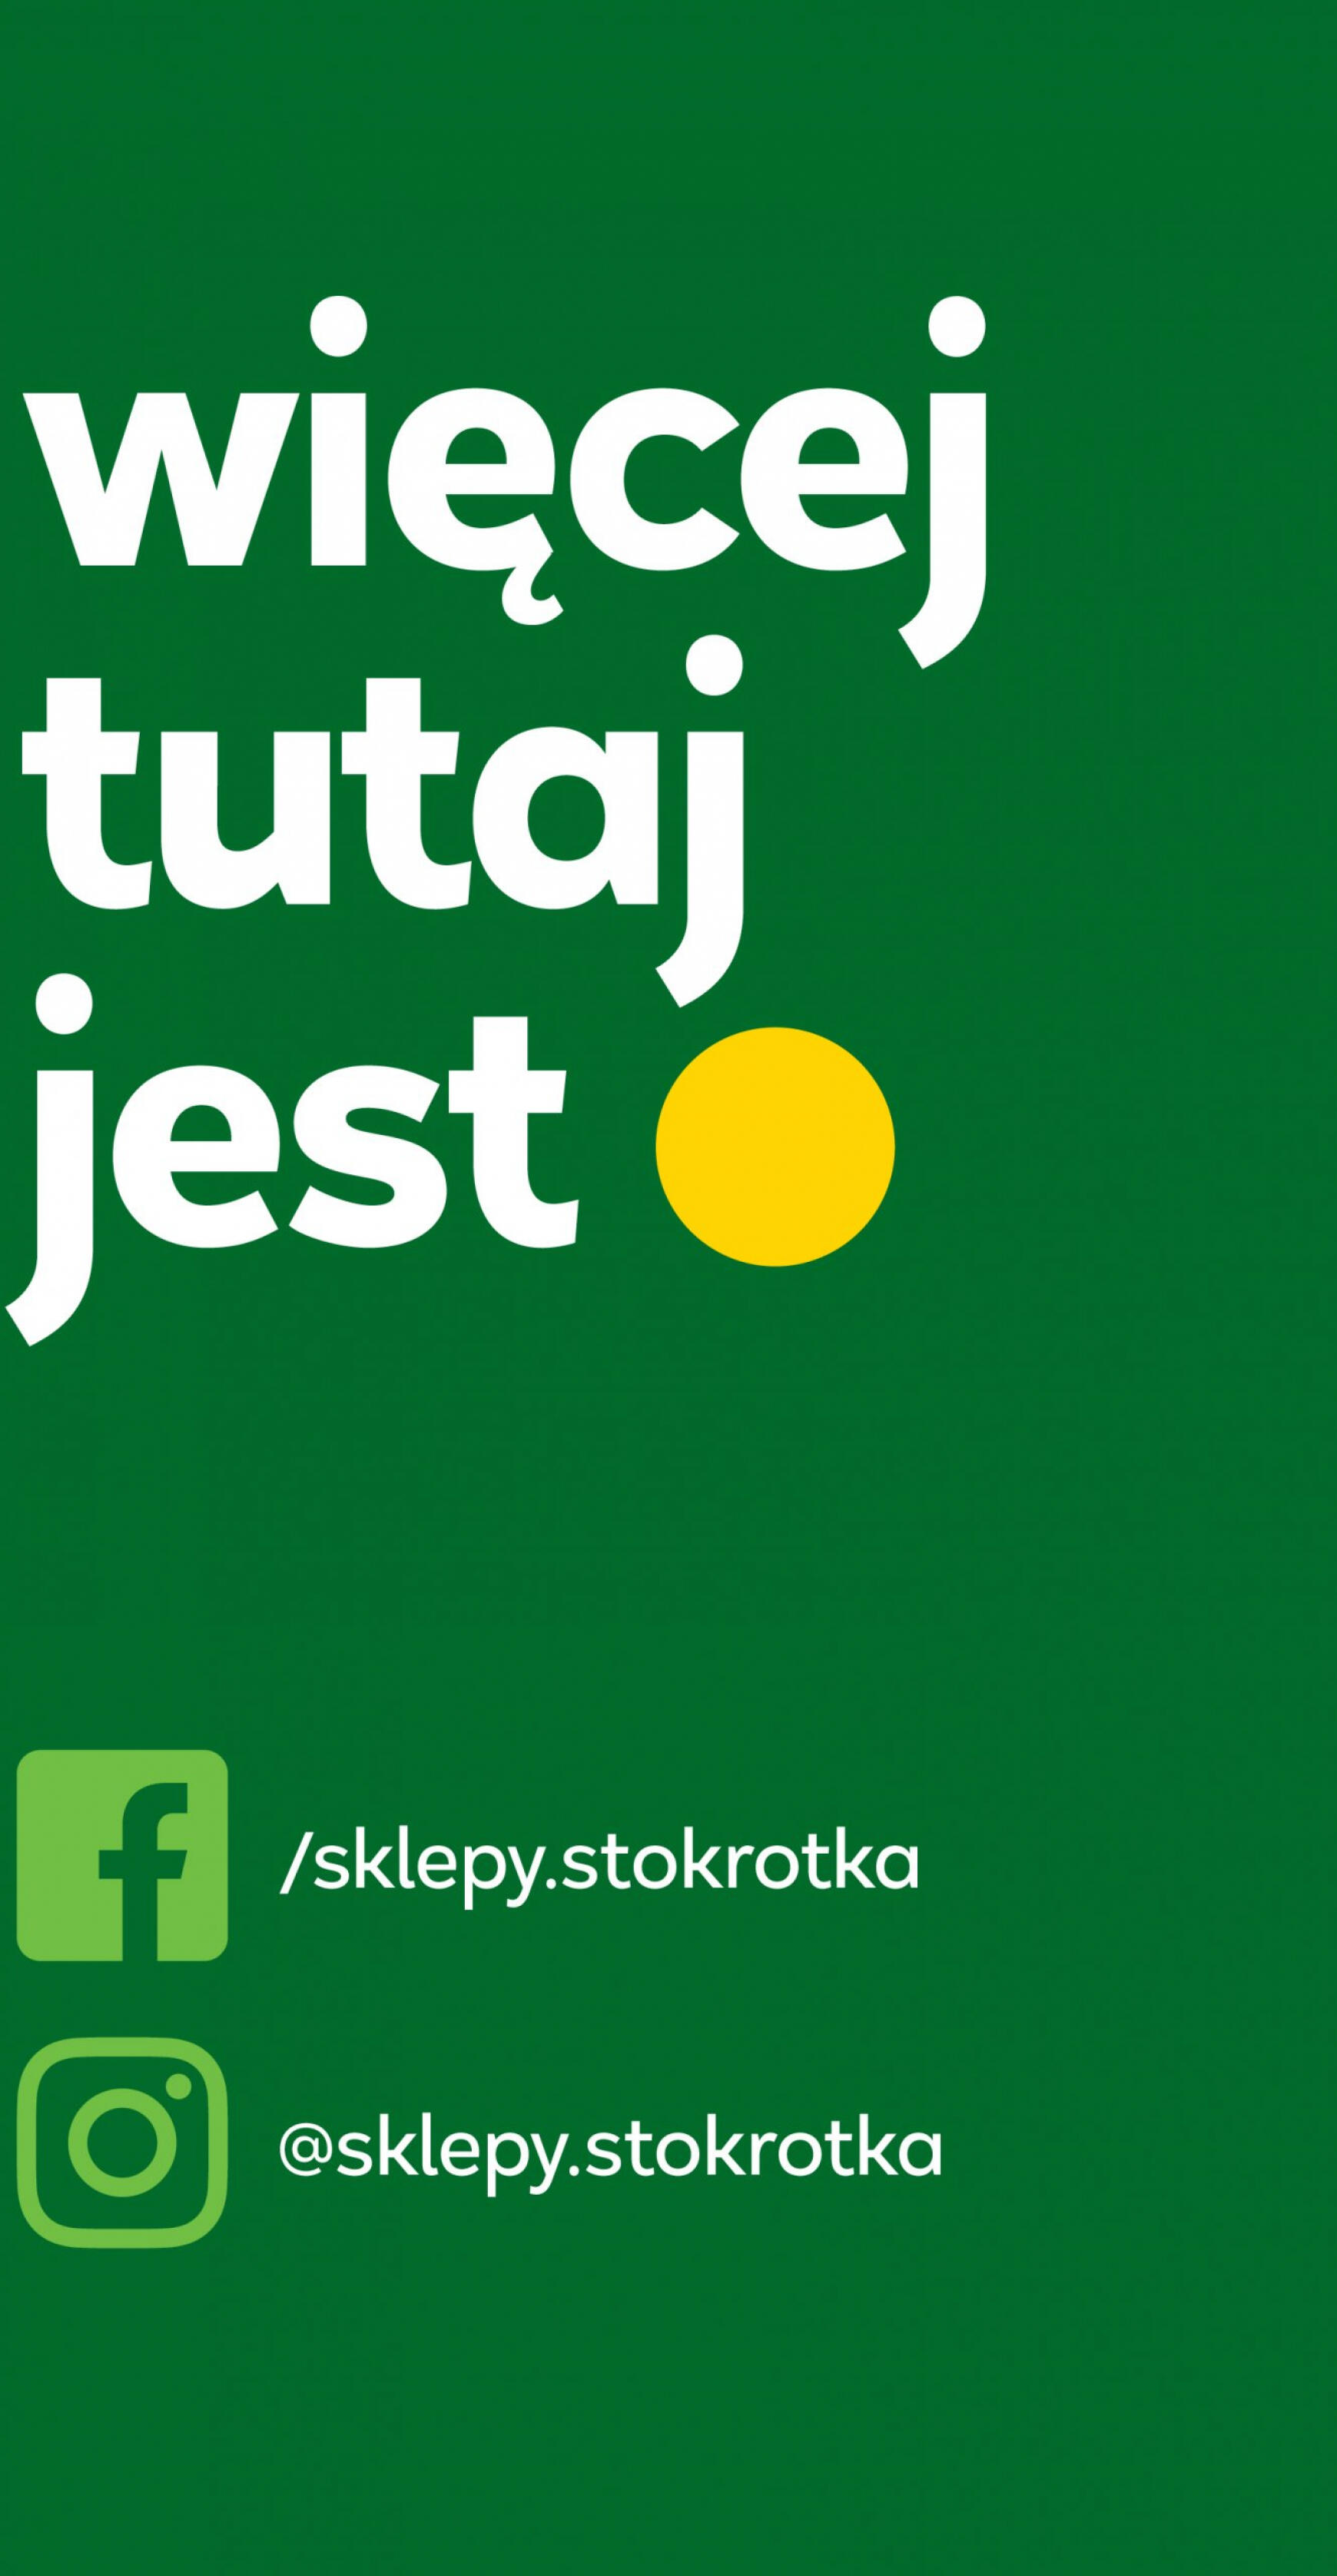 stokrotka - Stokrotka Market gazetka aktualna ważna od 25.04. - 29.04. - page: 29